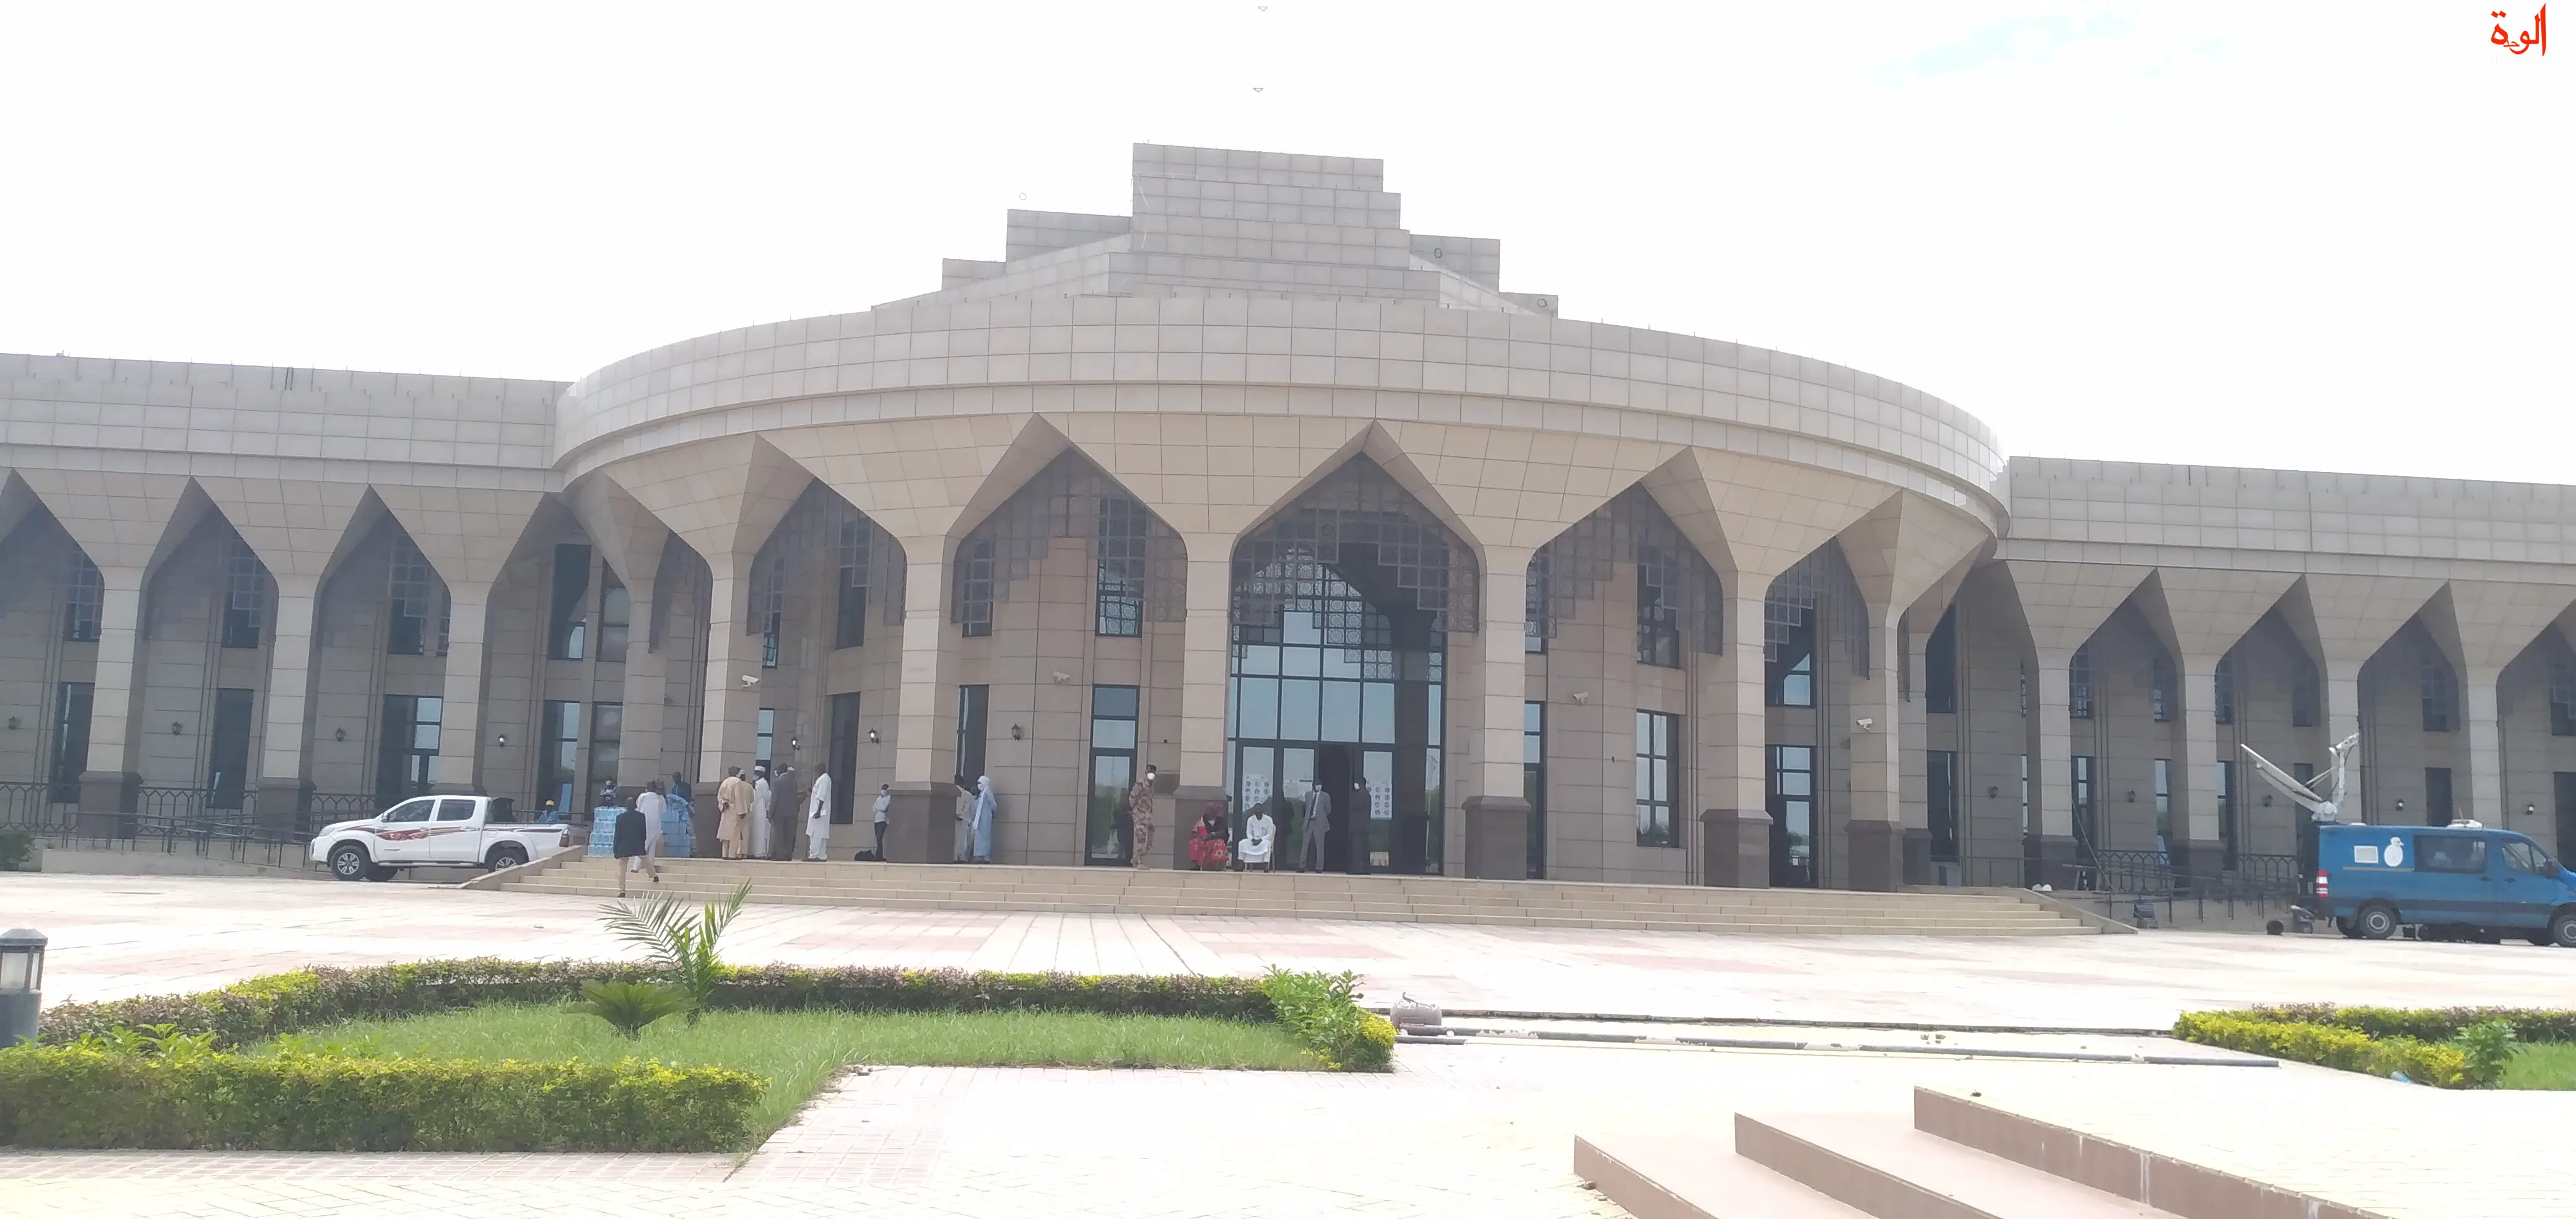 Tchad : l'Assemblée nationale ouvre sa 2ème session ordinaire